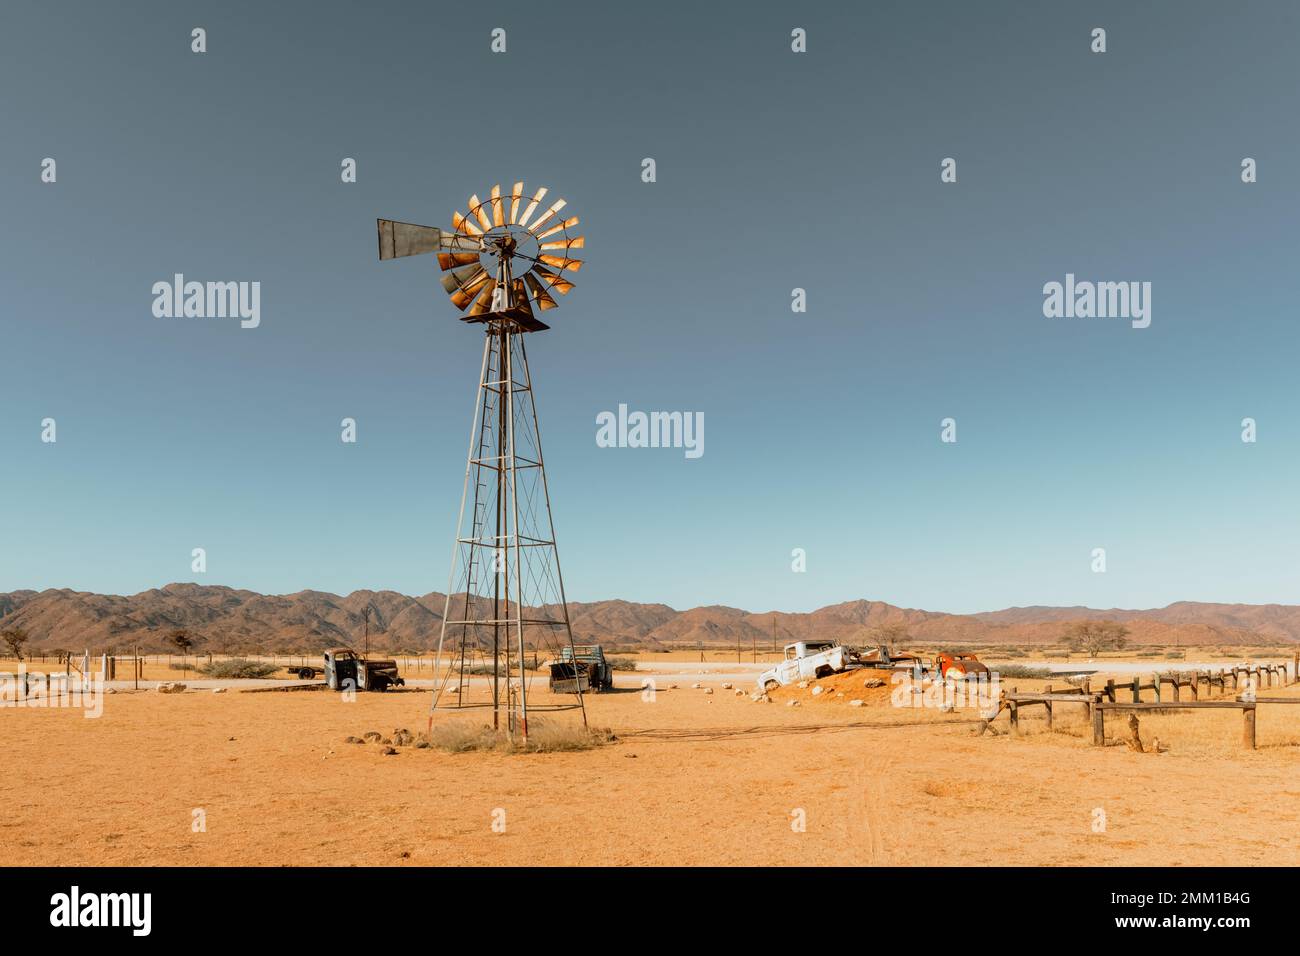 Verlassener, alter Autofriedhof und alte rostige Windturbine in der sandigen Wüste mit blauem Himmel im Hintergrund Stockfoto